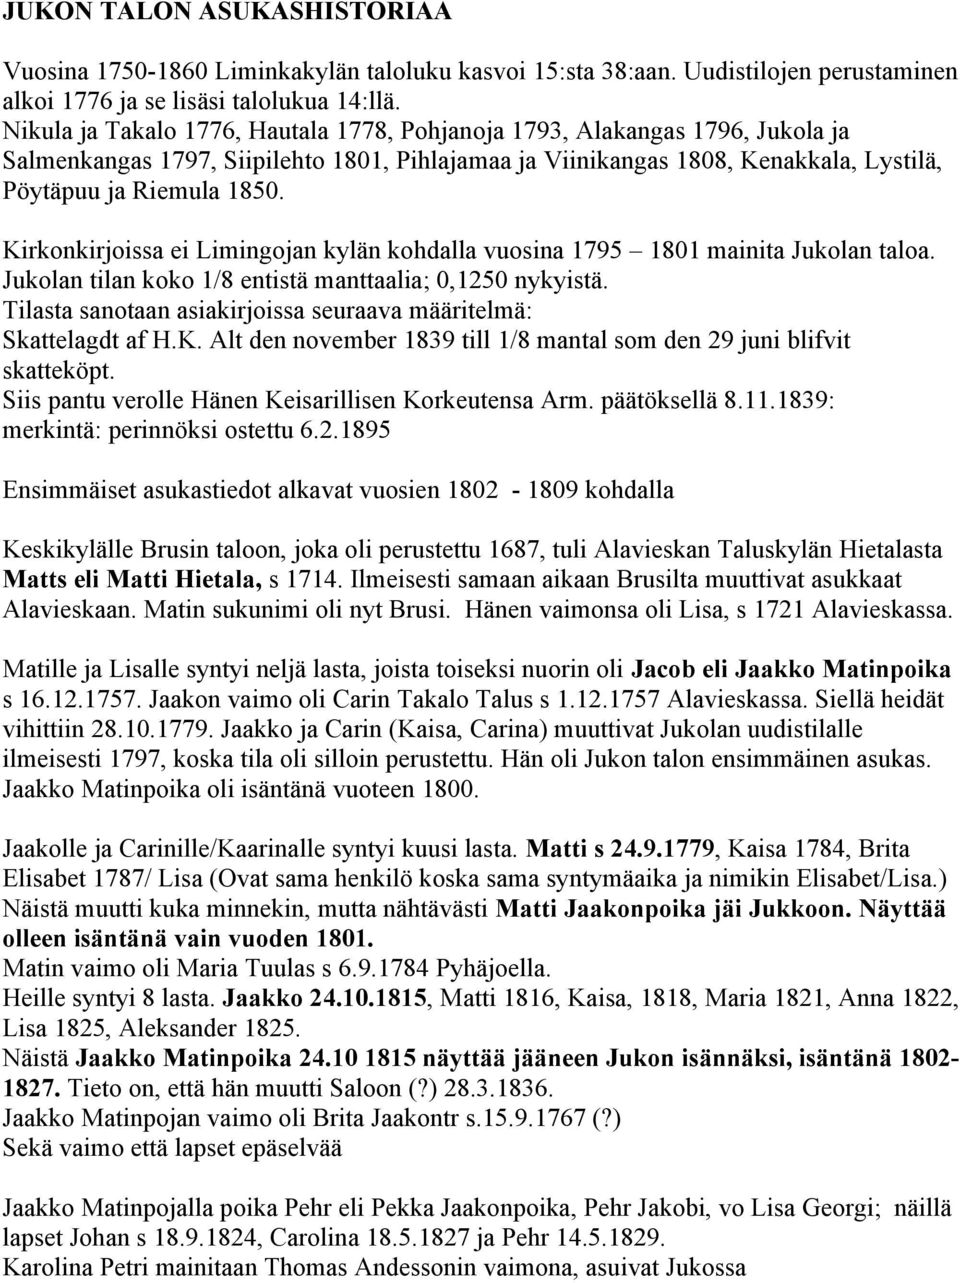 Kirkonkirjoissa ei Limingojan kylän kohdalla vuosina 1795 1801 mainita Jukolan taloa. Jukolan tilan koko 1/8 entistä manttaalia; 0,1250 nykyistä.